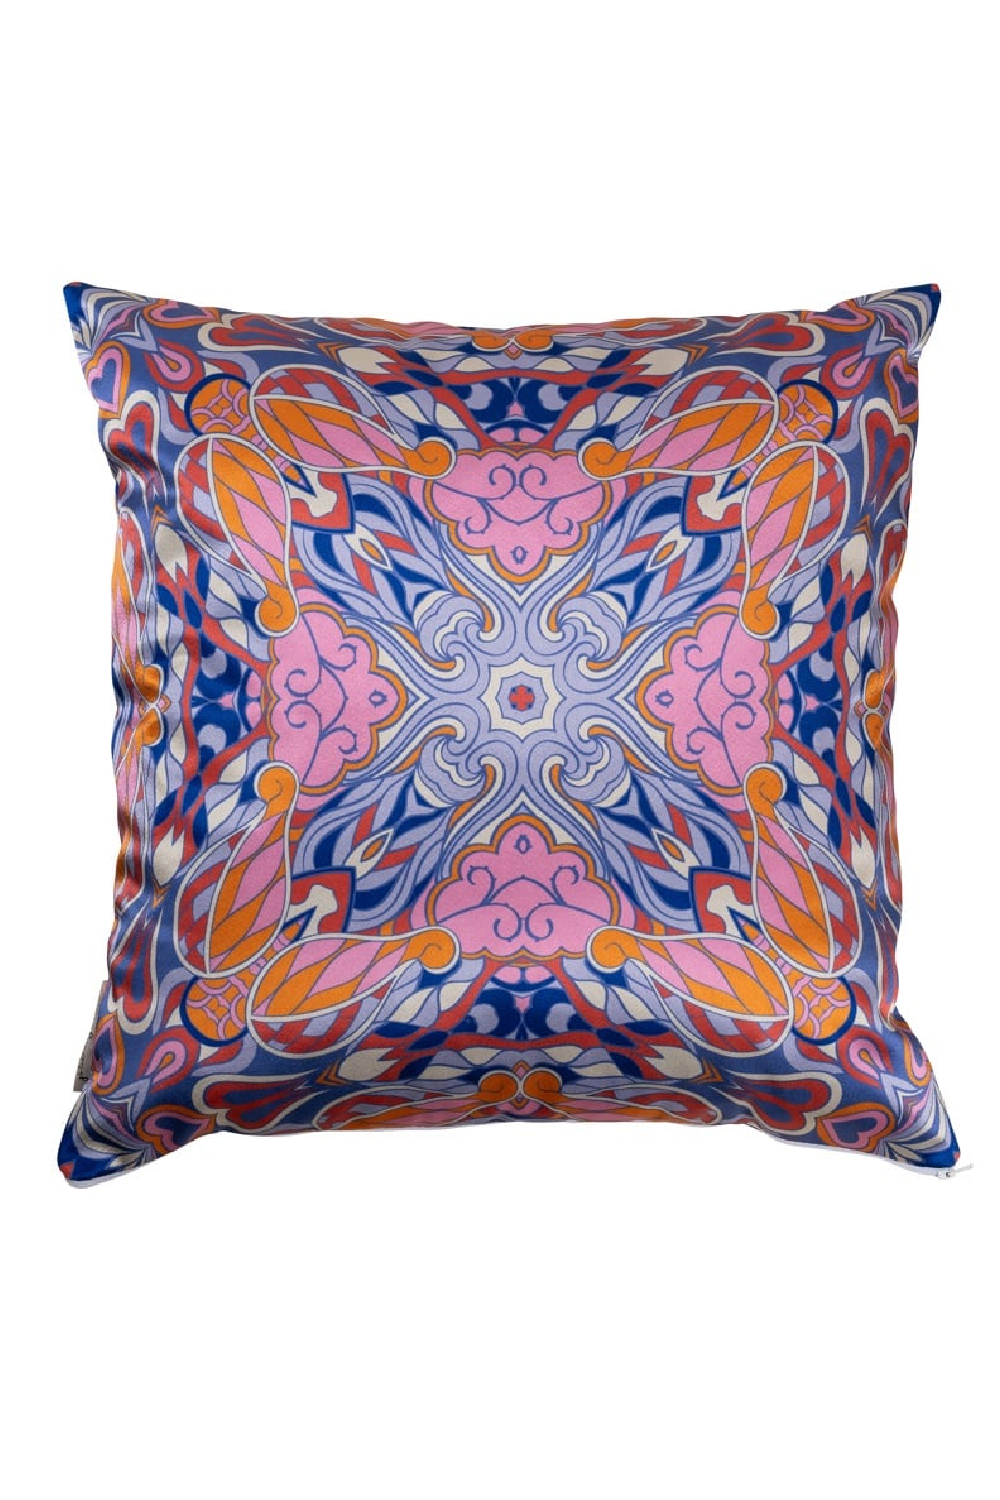 Multicolored Paisley Patterned Pillow | OROA Melany | Oroa.com